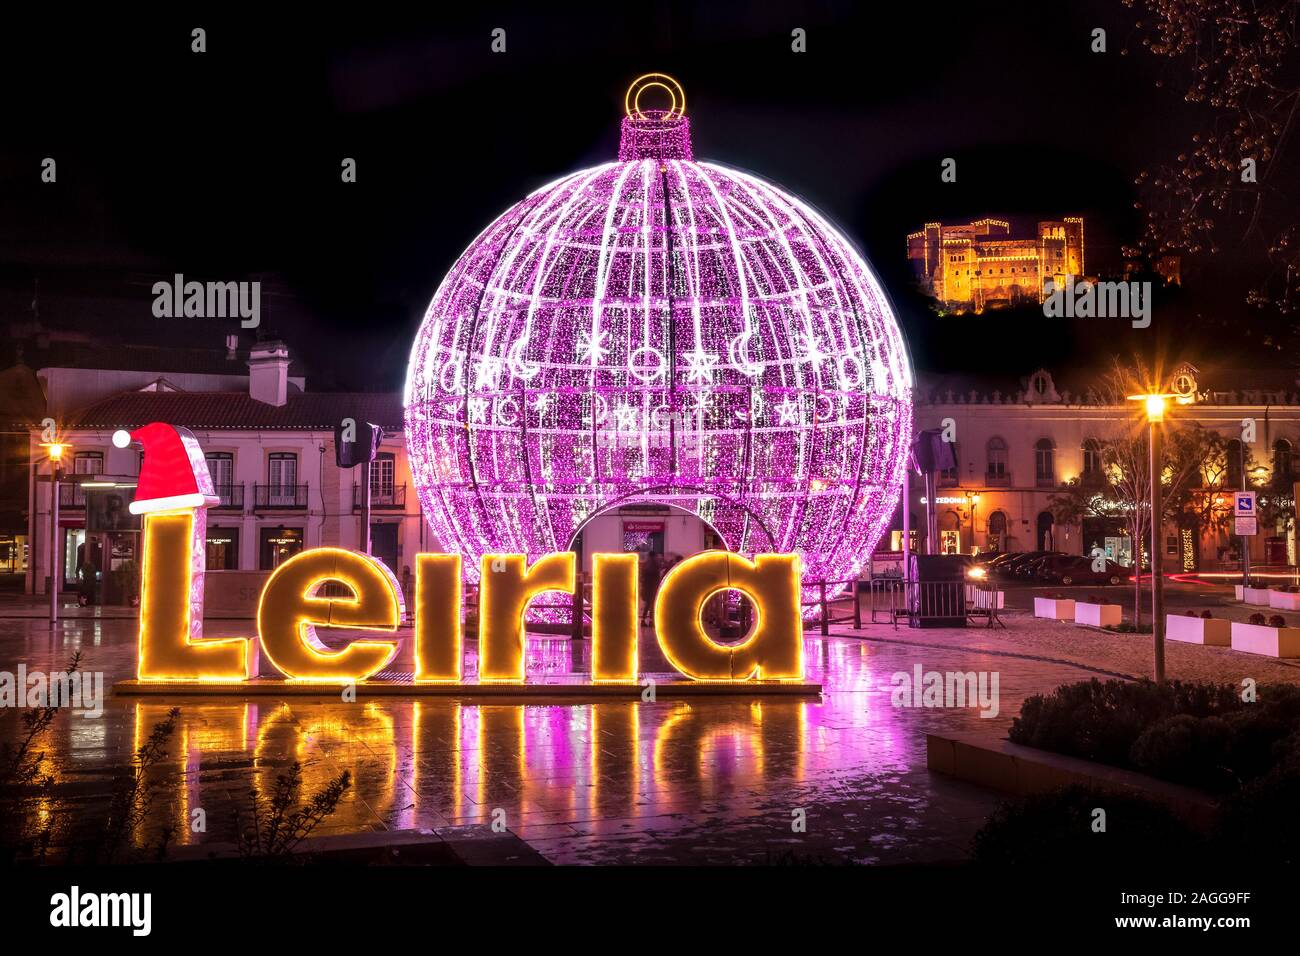 Leiria, Portugal - 14 décembre 2019 : Noël décoration en Leiria, Portugal, avec le mot Leiria et une boule de noël géant. Banque D'Images